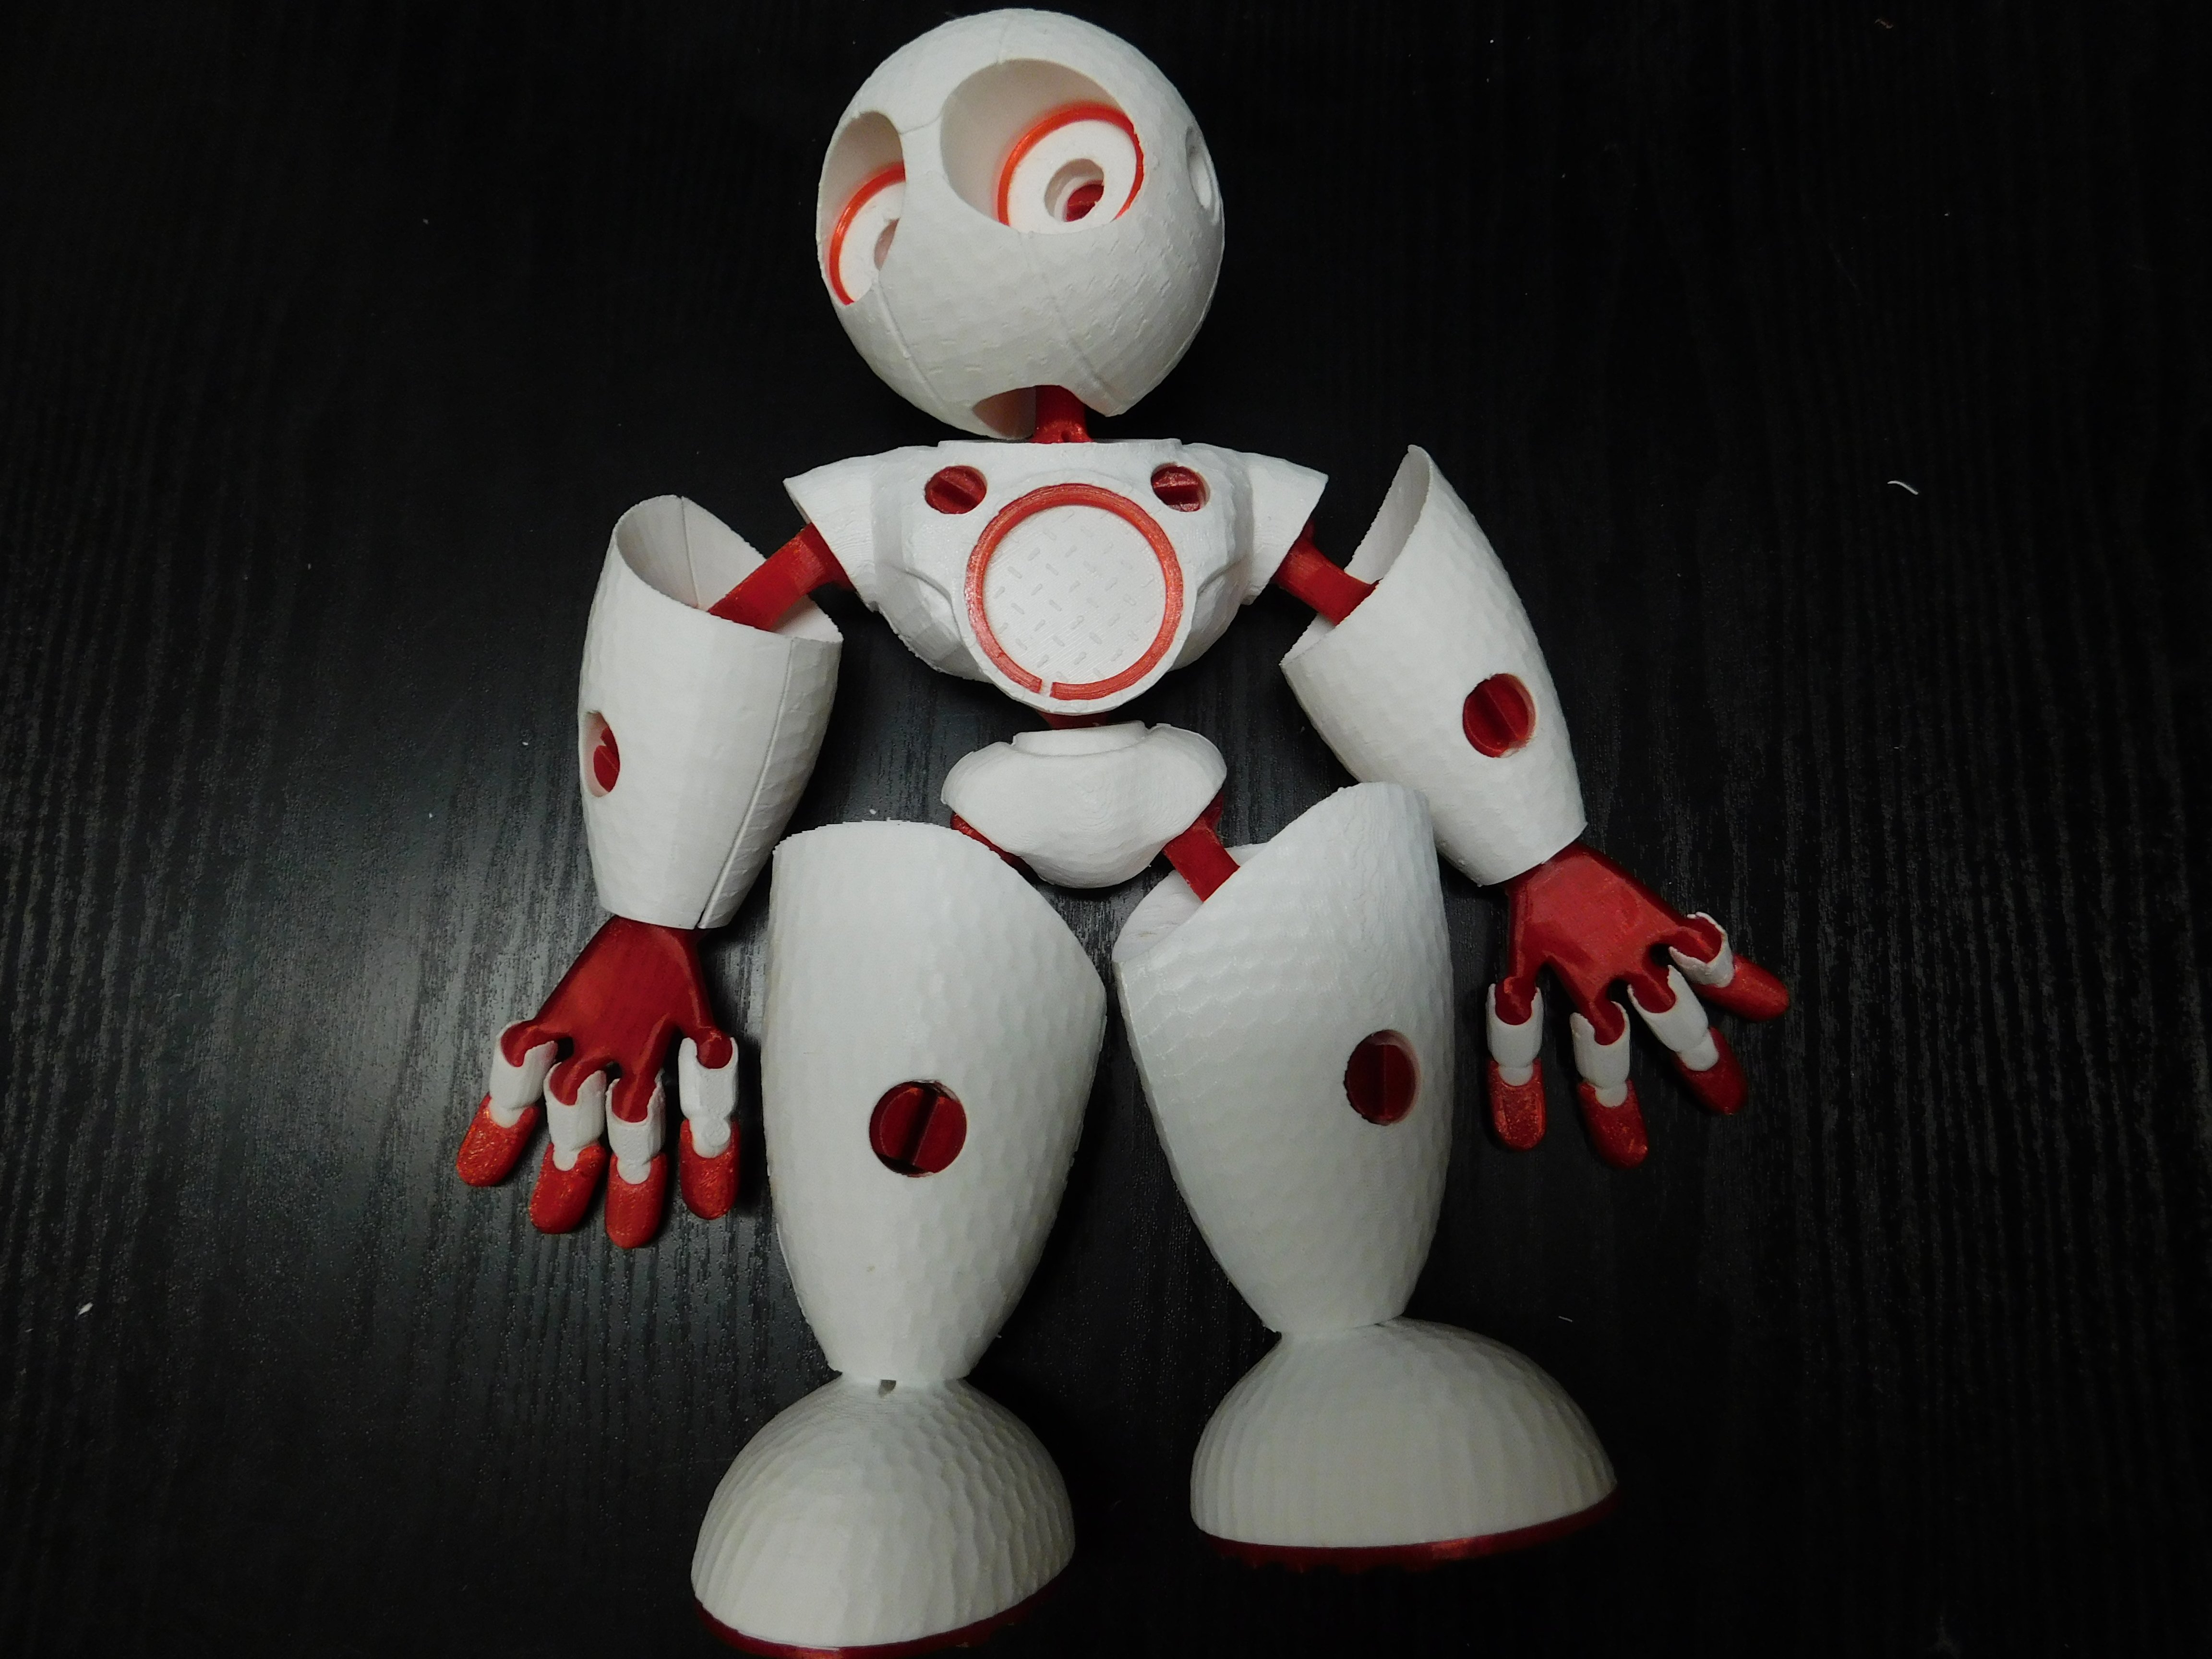 Robot / Robot textured